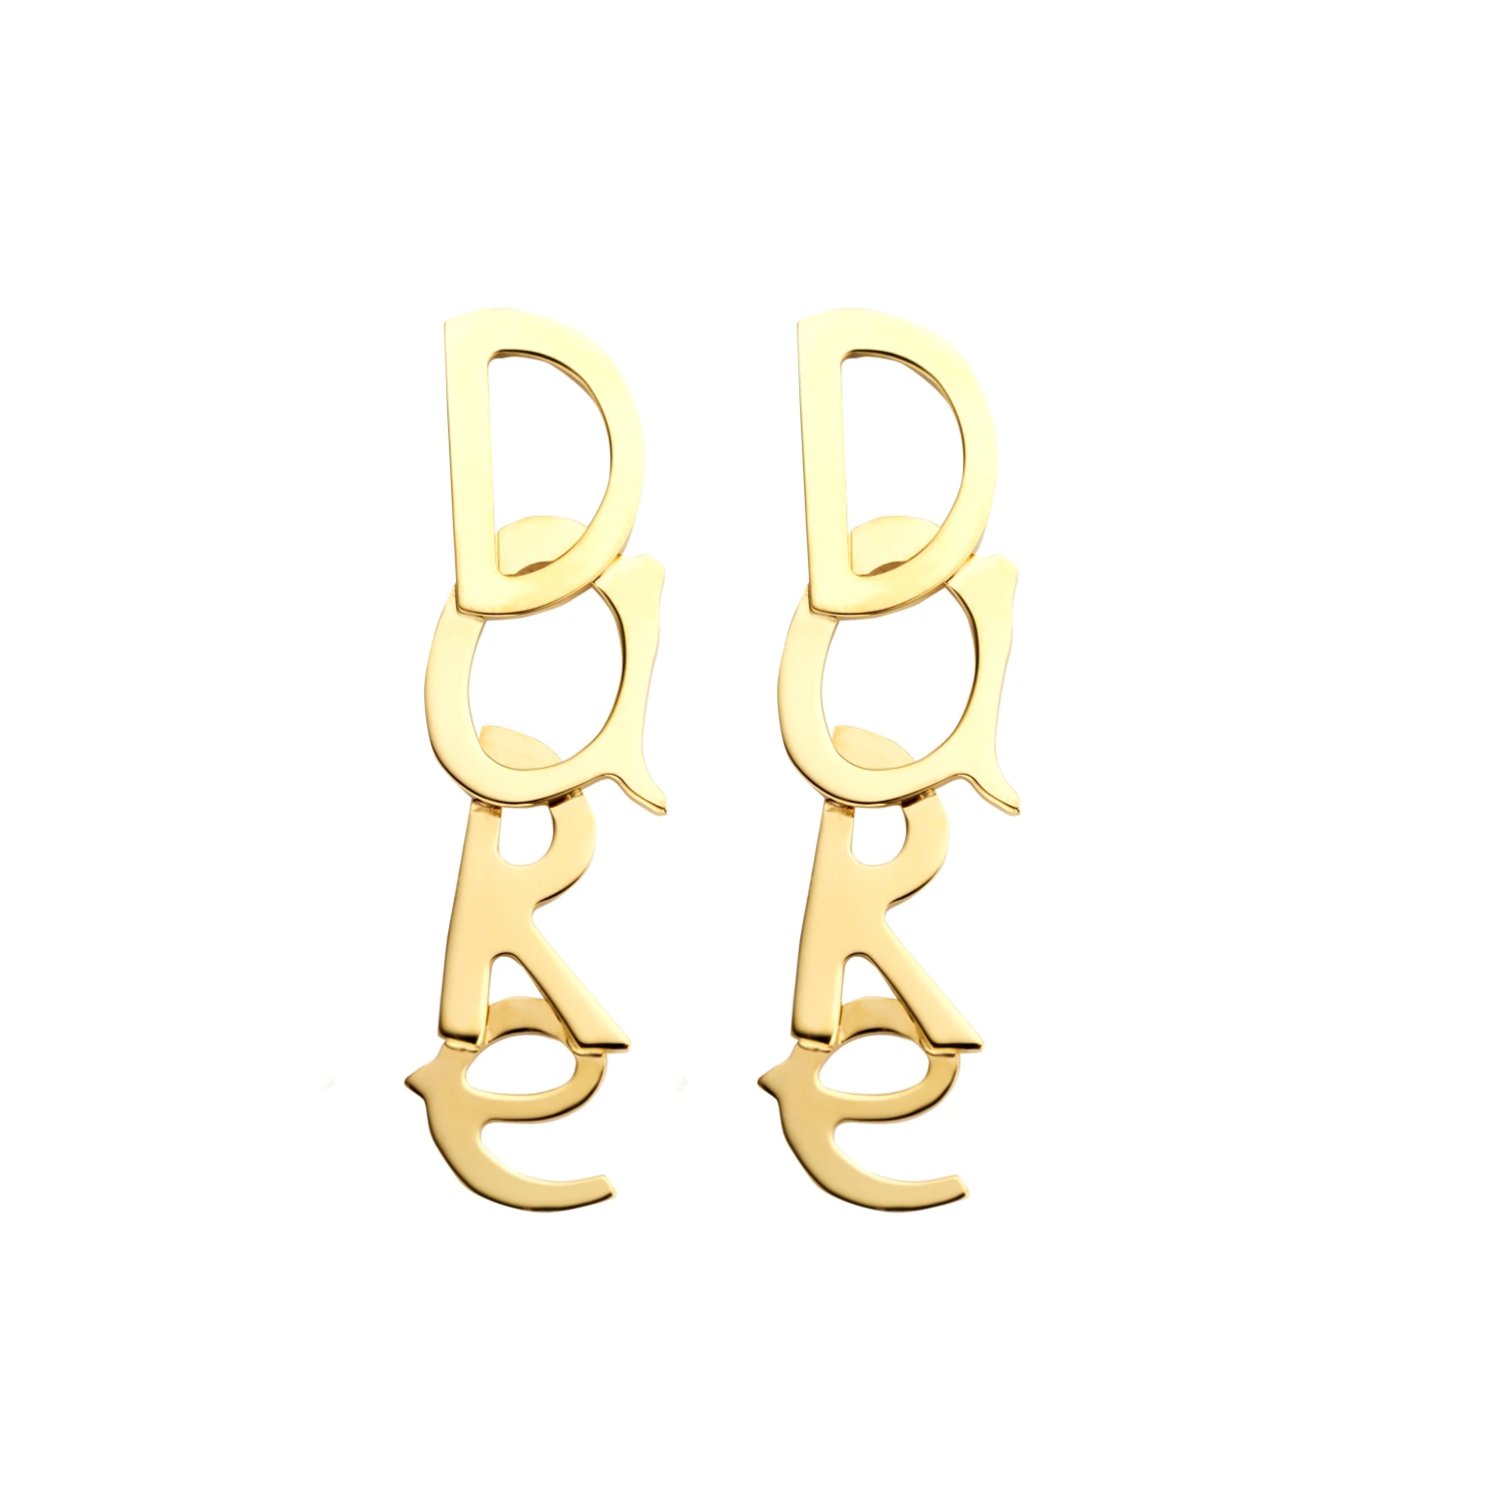 Dare gold earrings - Souvenirs de Pomme